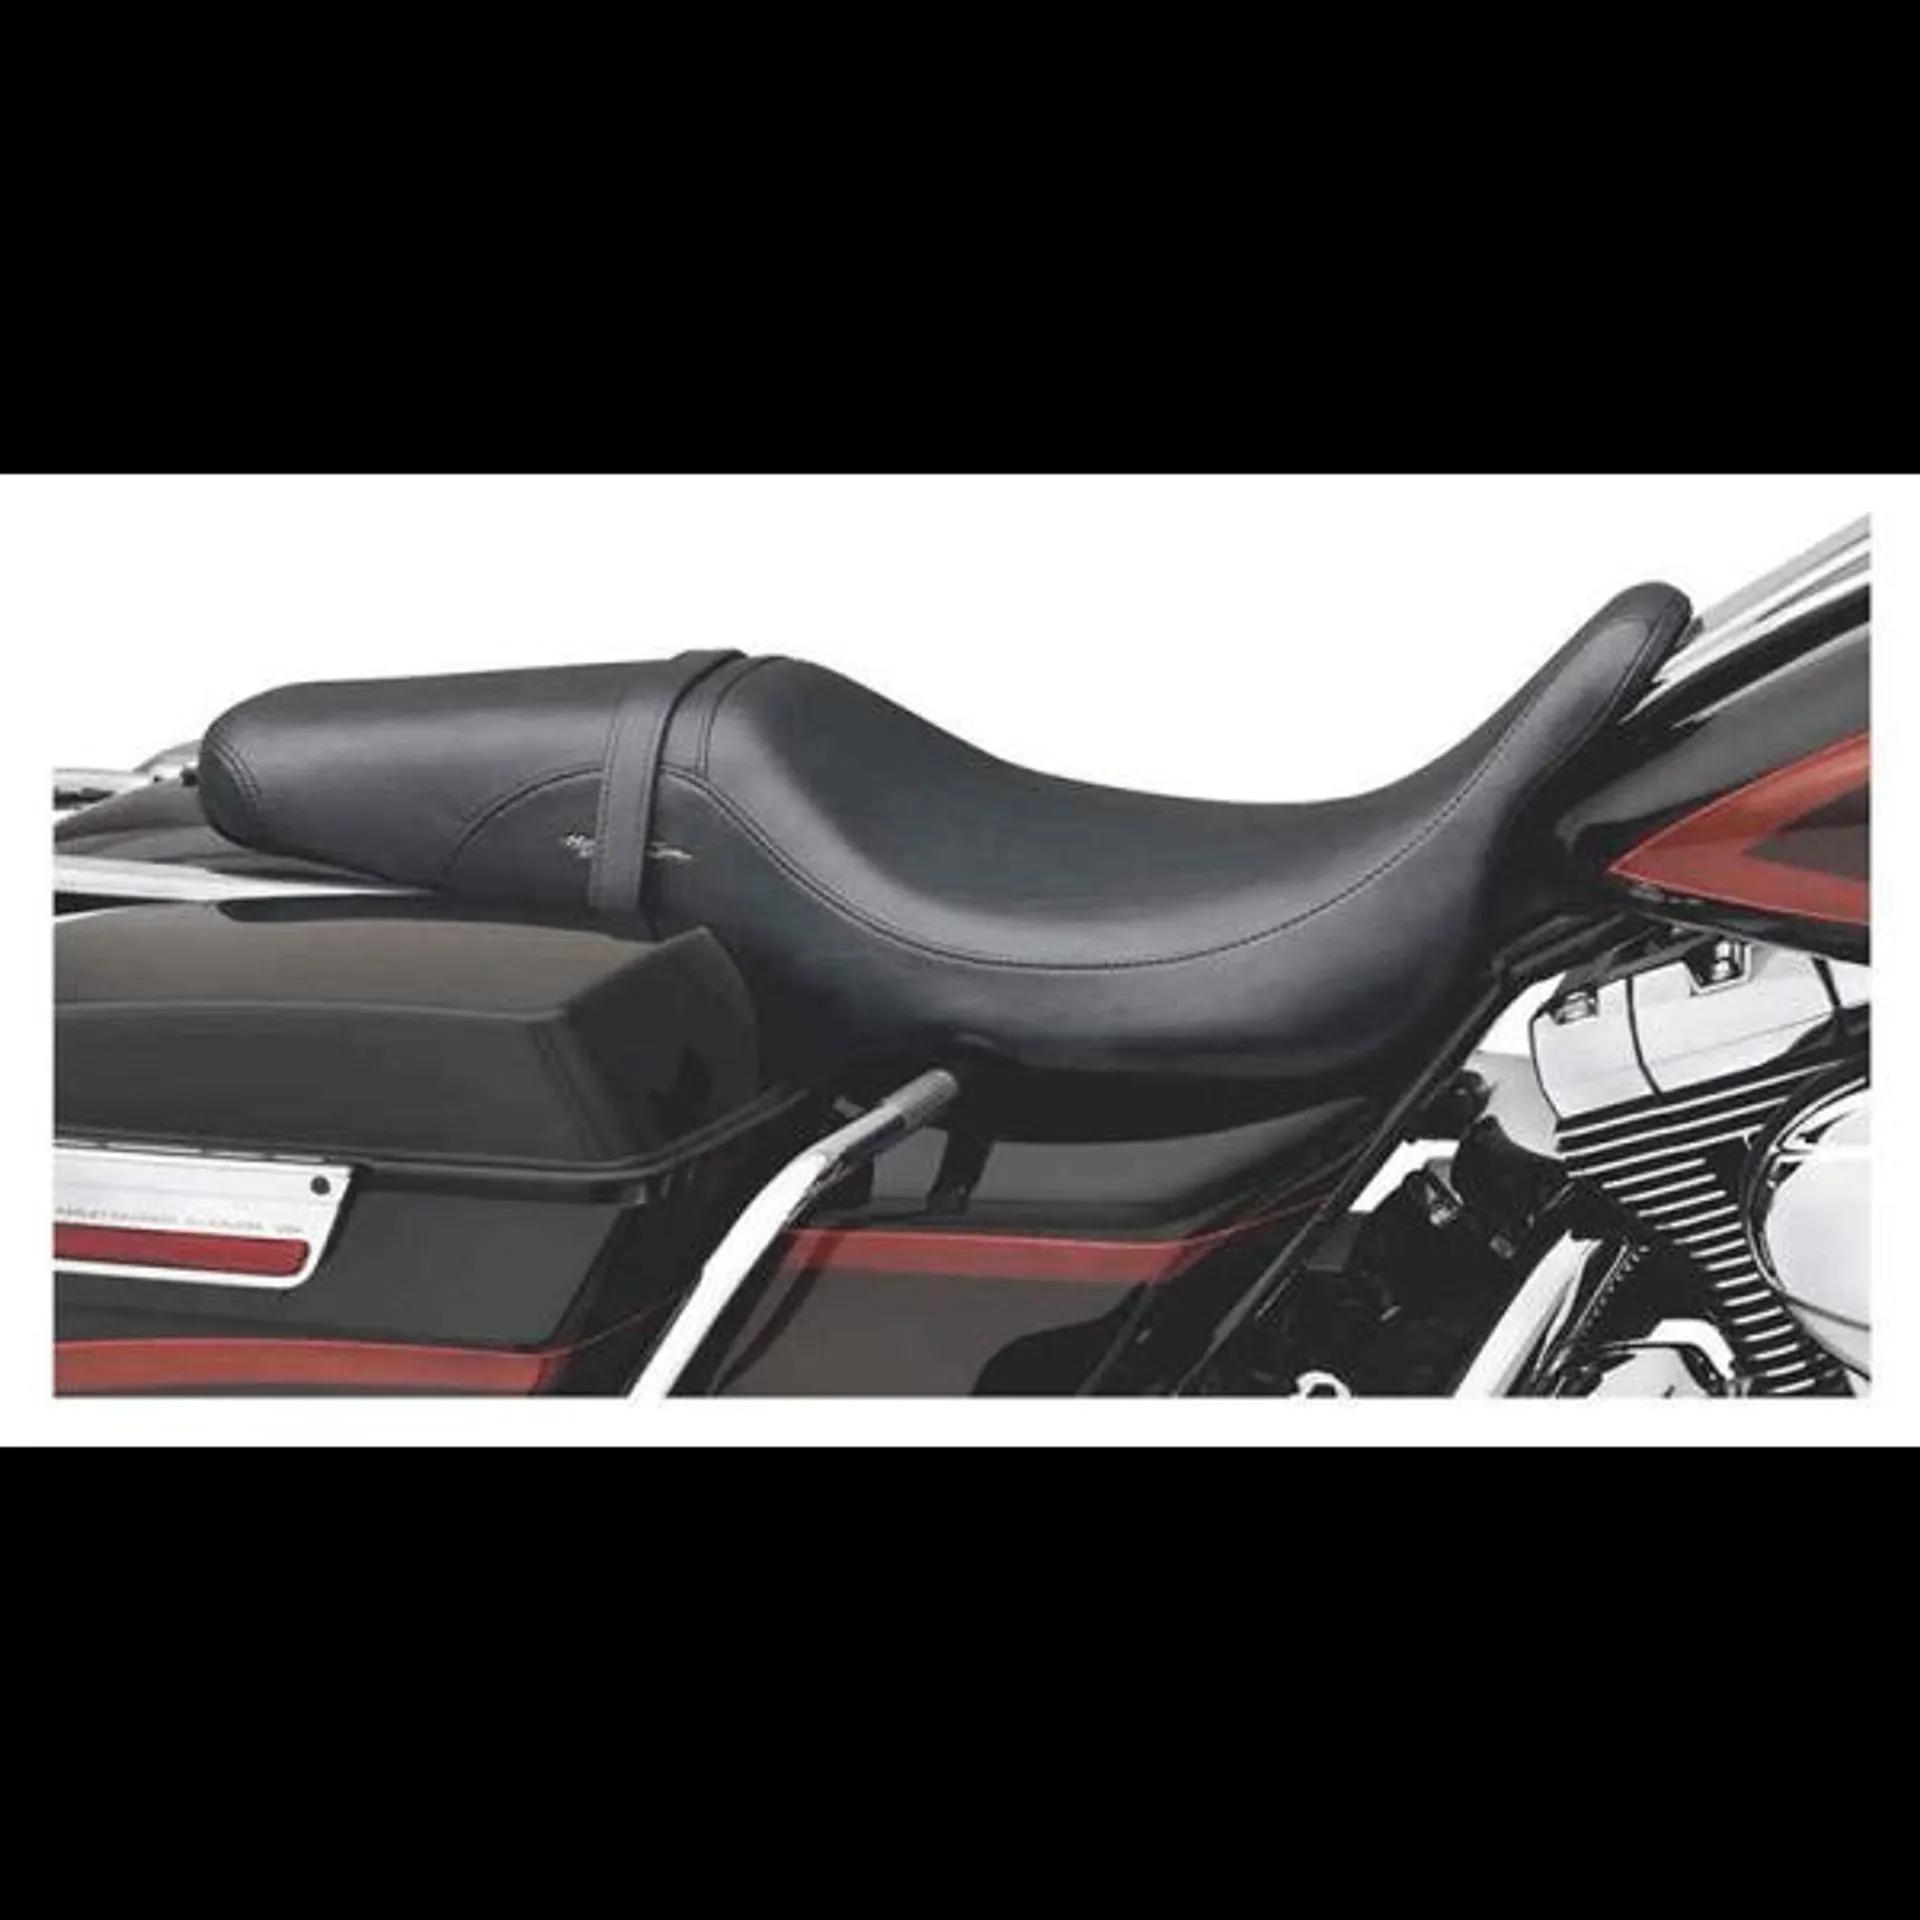 Badlander Seat, Fits ’97-’07 Road King & FLHX Models